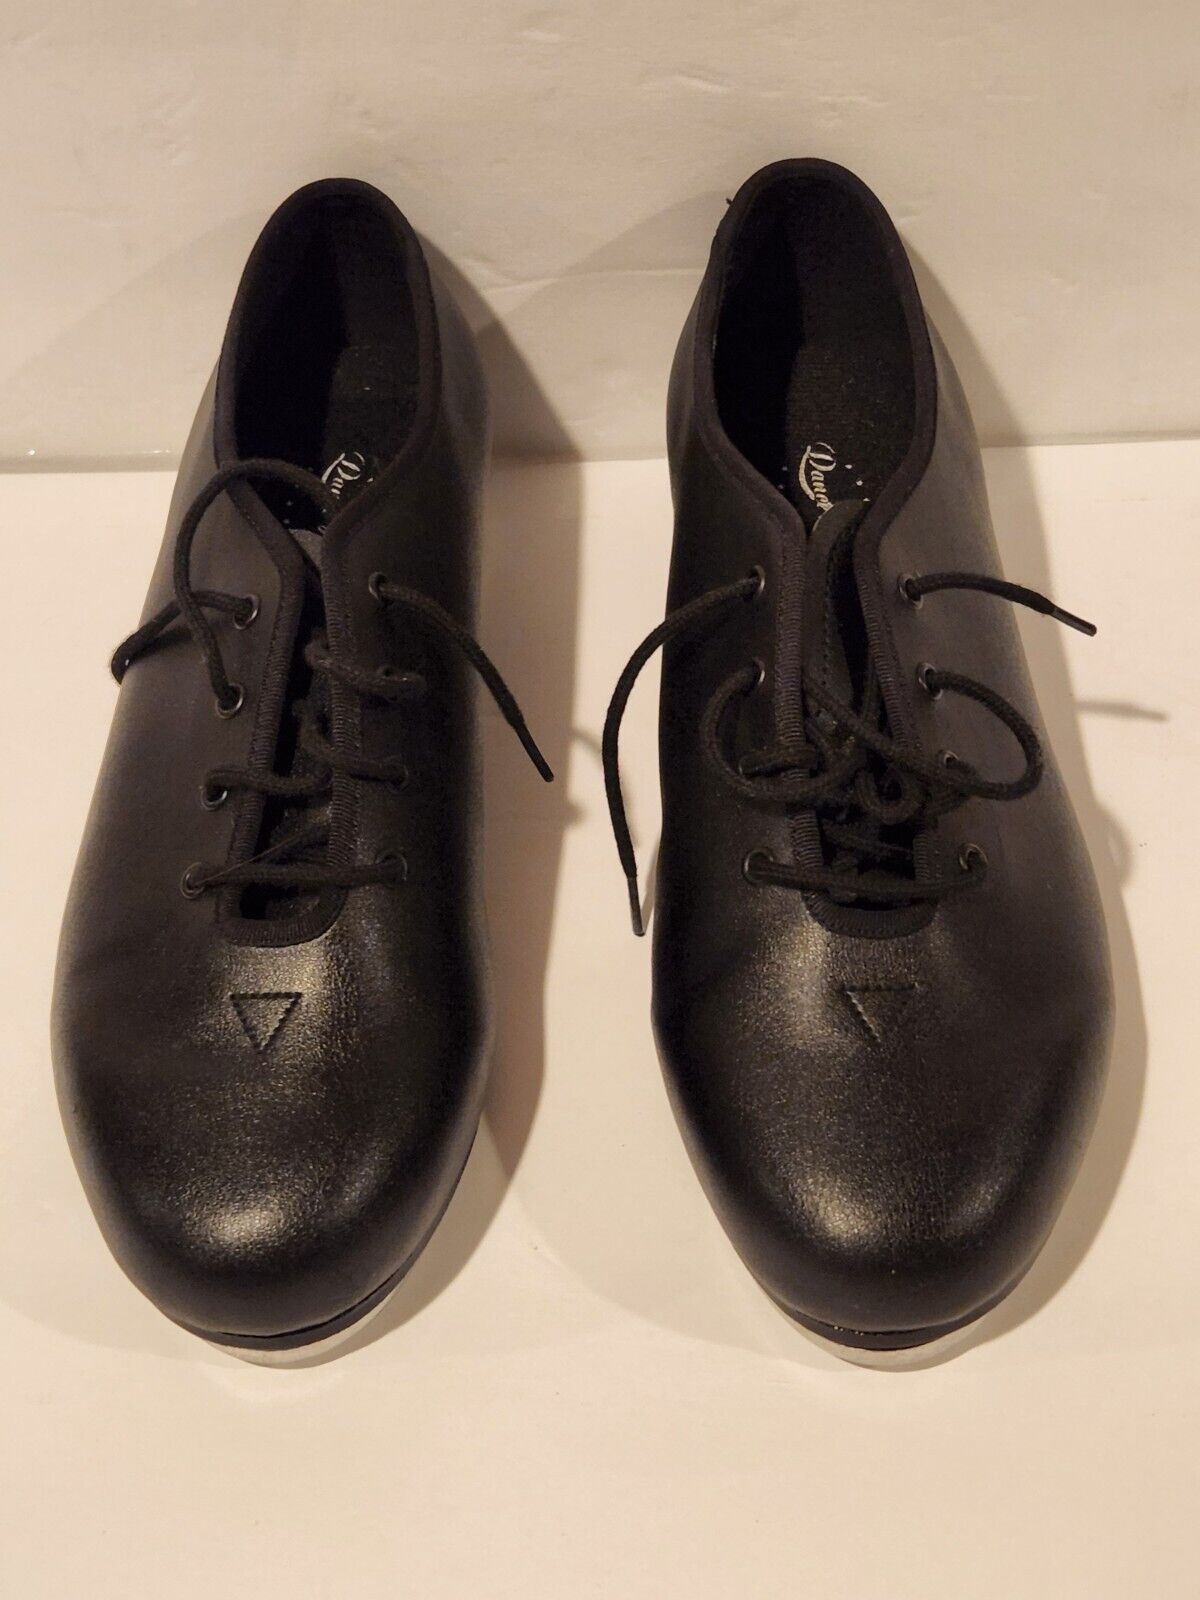 Unisex Bloch  Techno Tap #2t & #1h  - Black Tap Shoes  Size 5 1/2 (m)